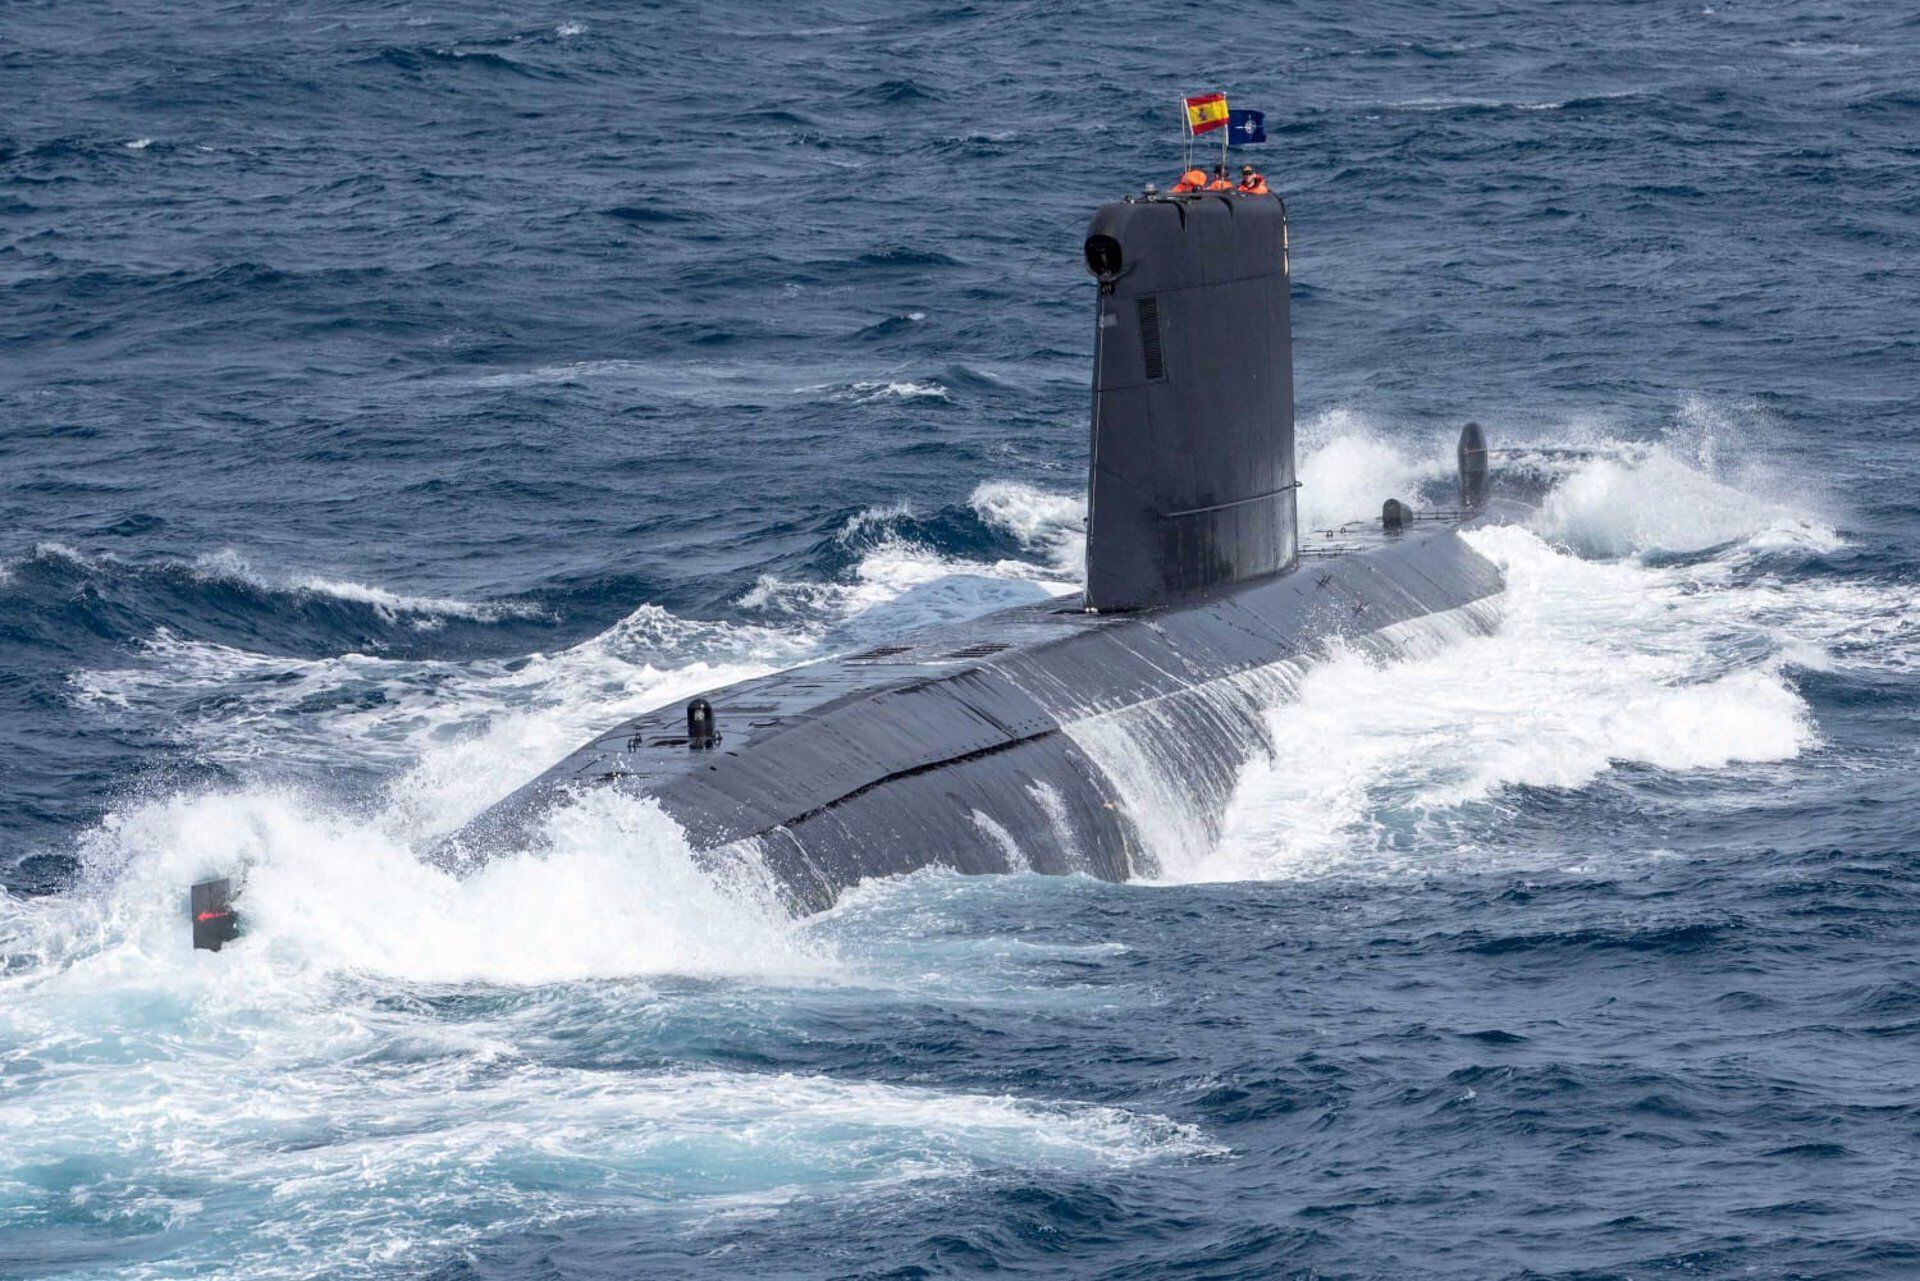 Submarino 'Tramontana', uno de los que se han desplegado en el Mediterráneo a lo largo de la operación 'Sea Guardian' de la OTAN (Emad/Europa Press)